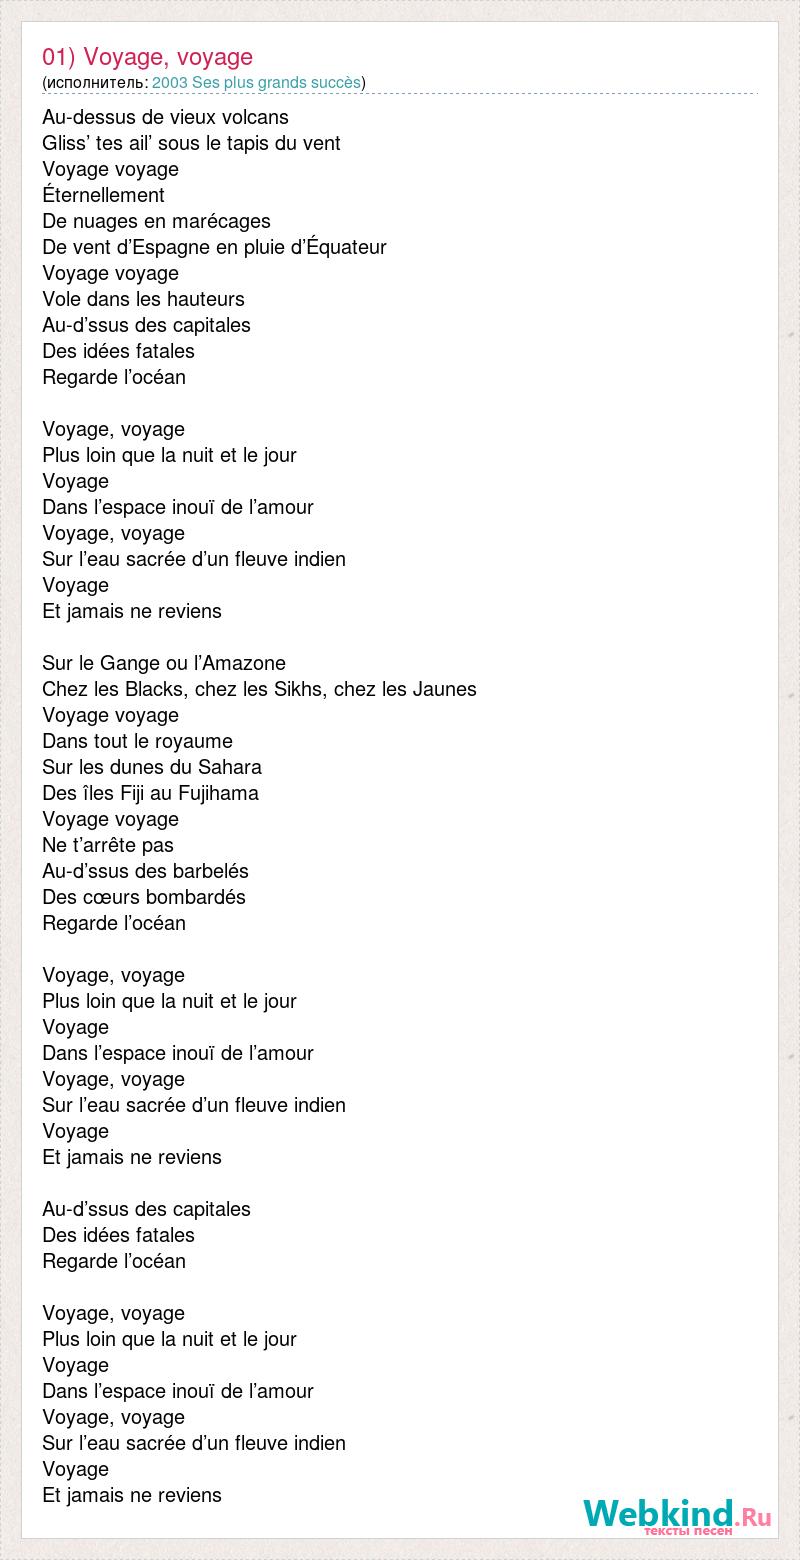 voyage voyage lyrics french